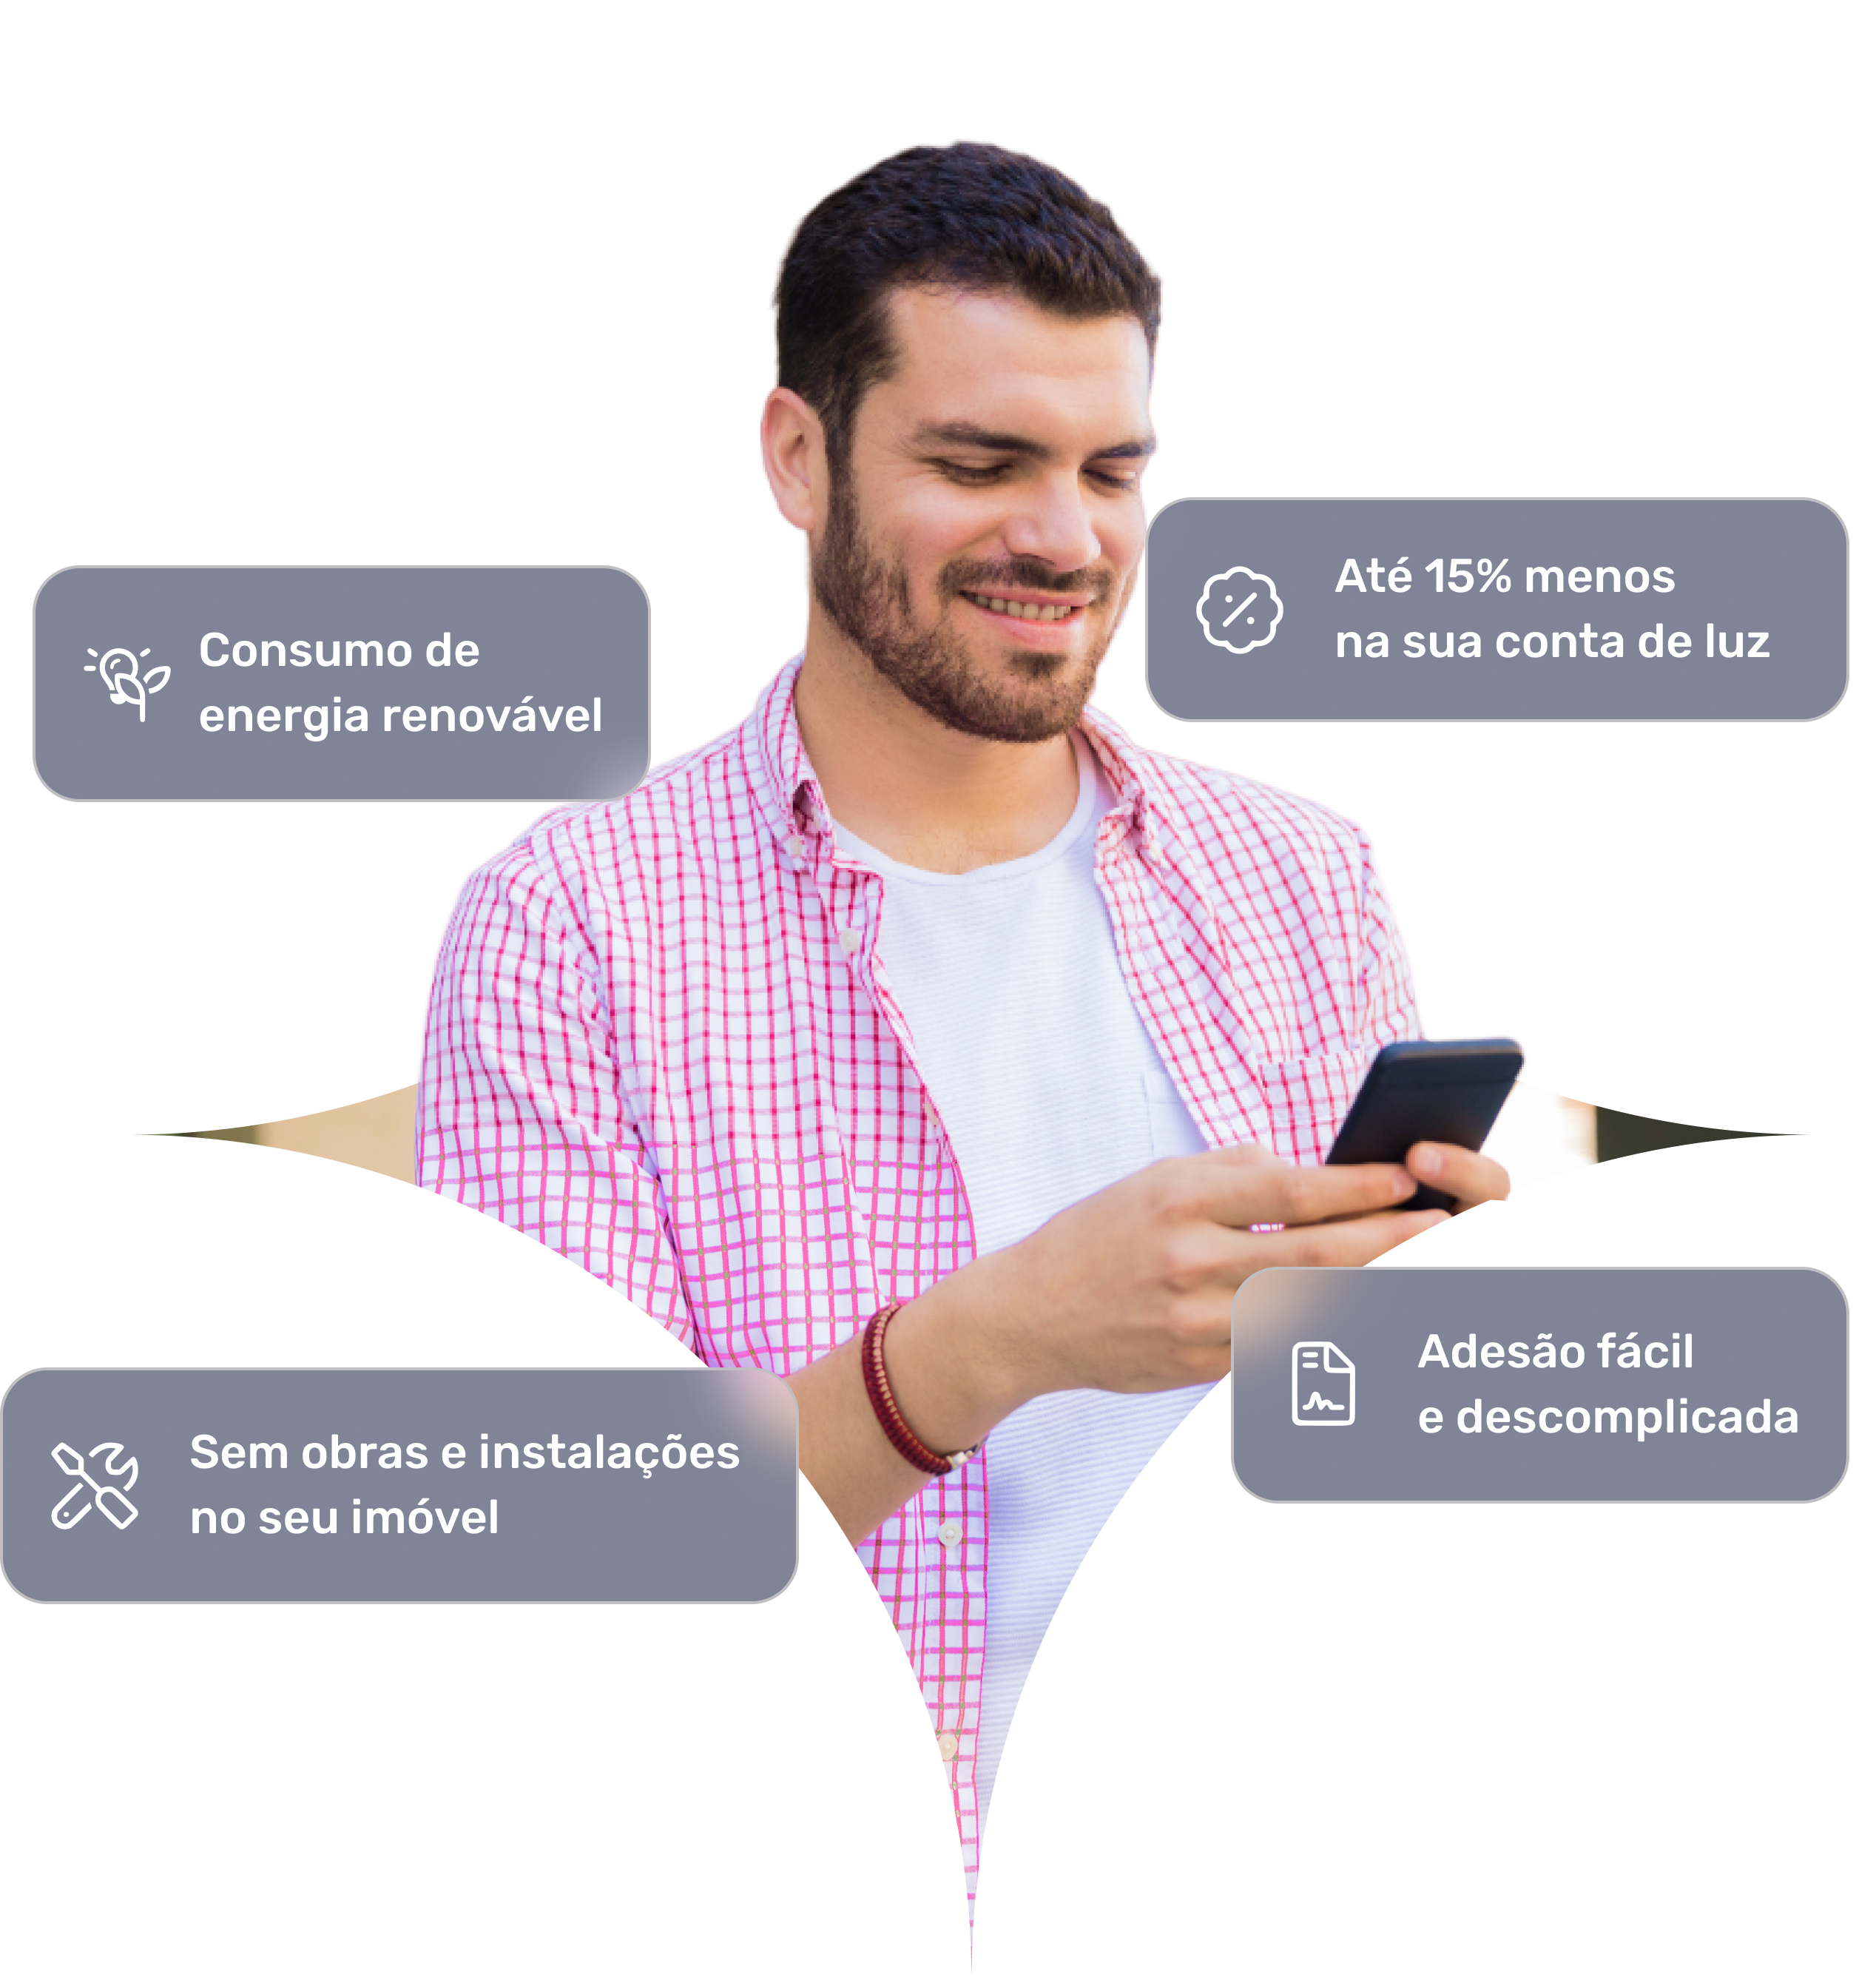 Um jovem contratando vendo os benefícios da SolarGrid no celular.